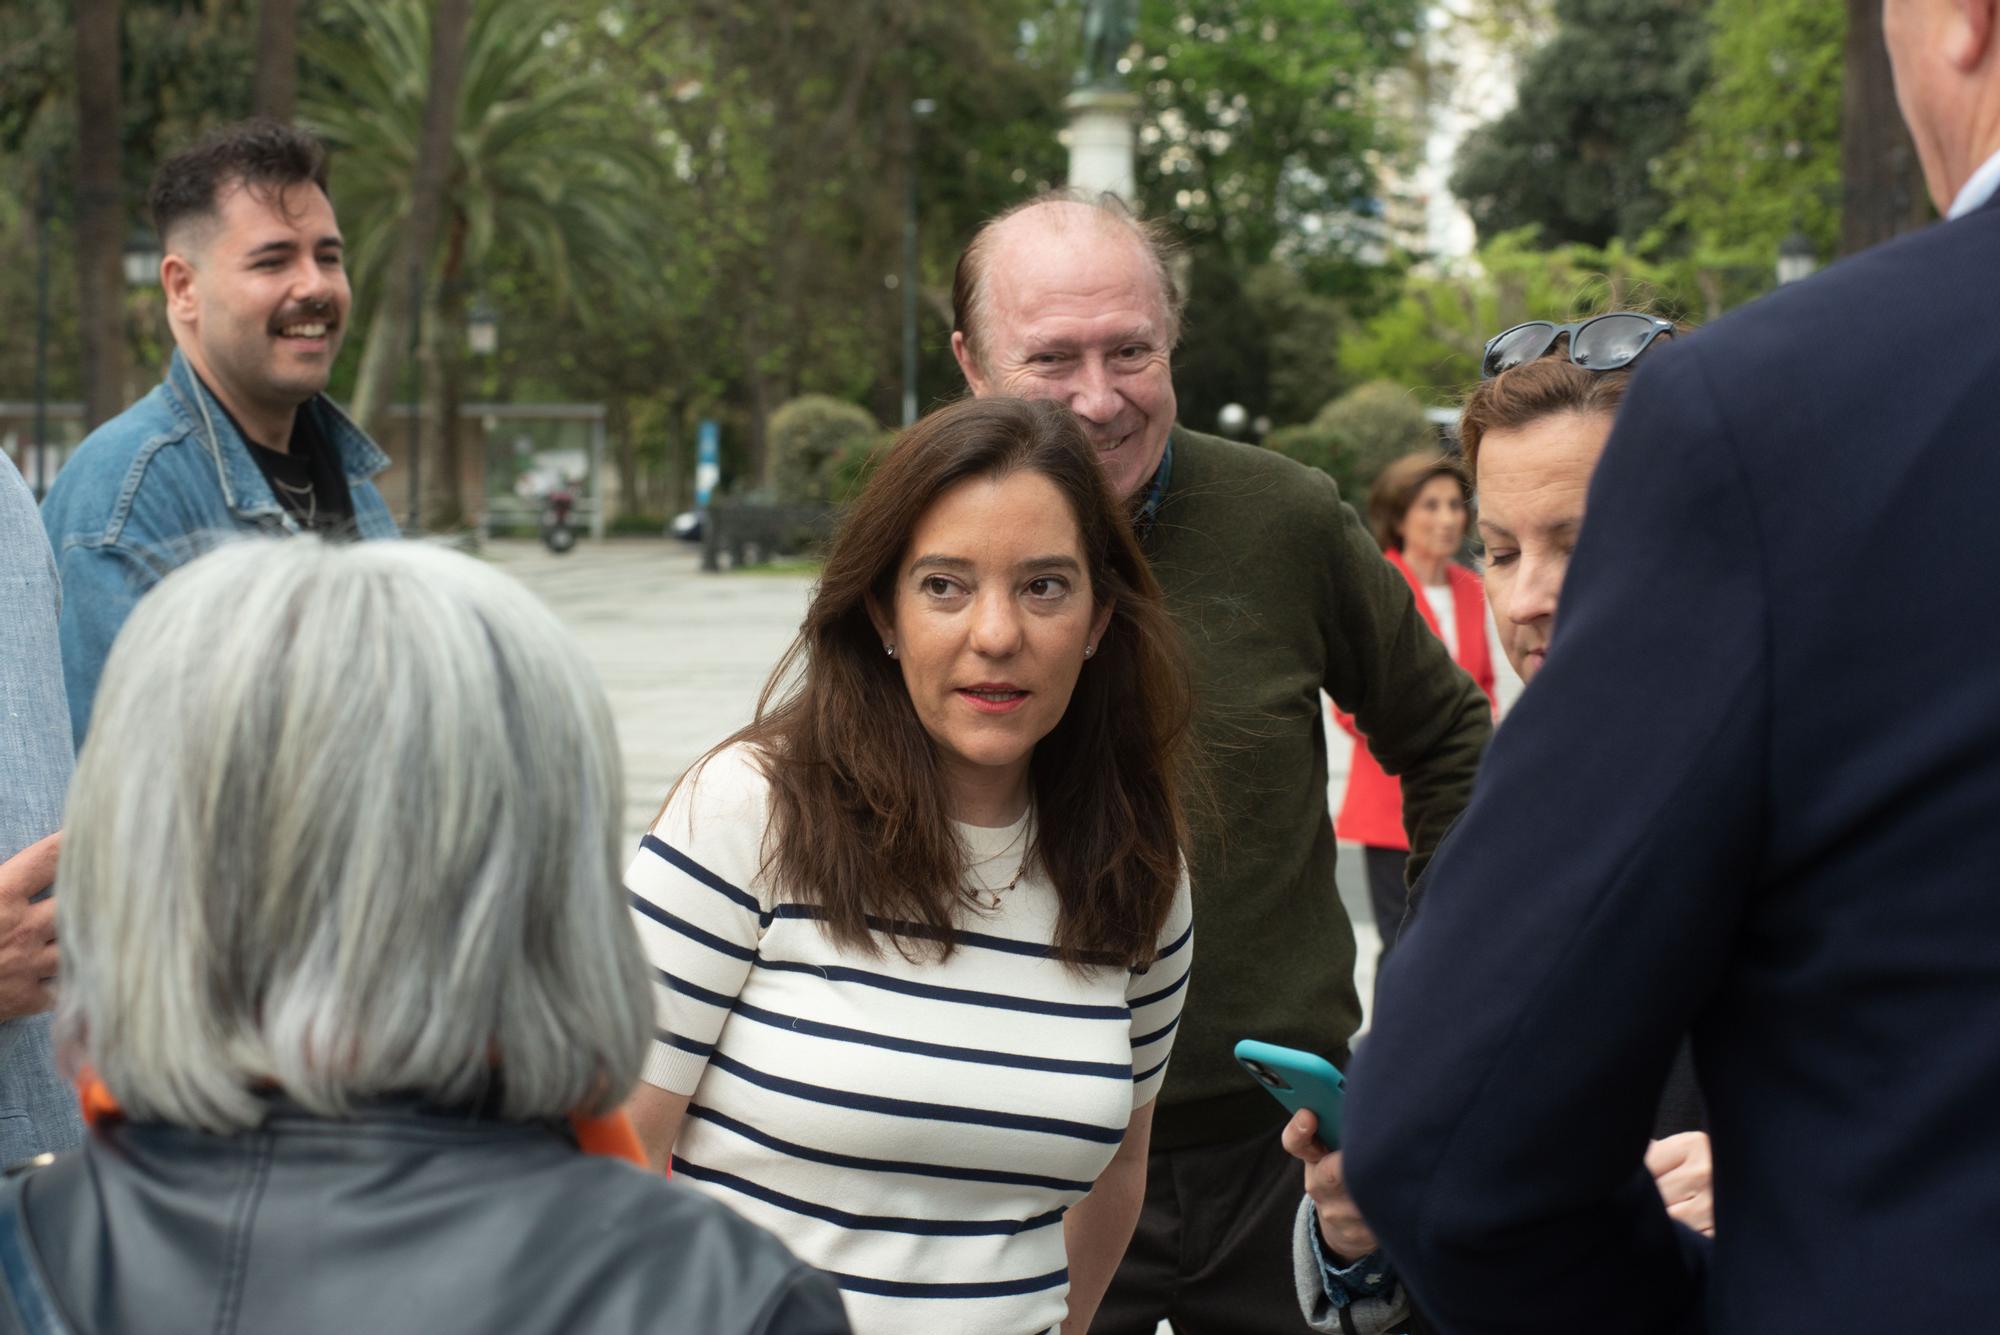 Elecciones municipales A Coruña | Presentación de la candidatura del PSOE